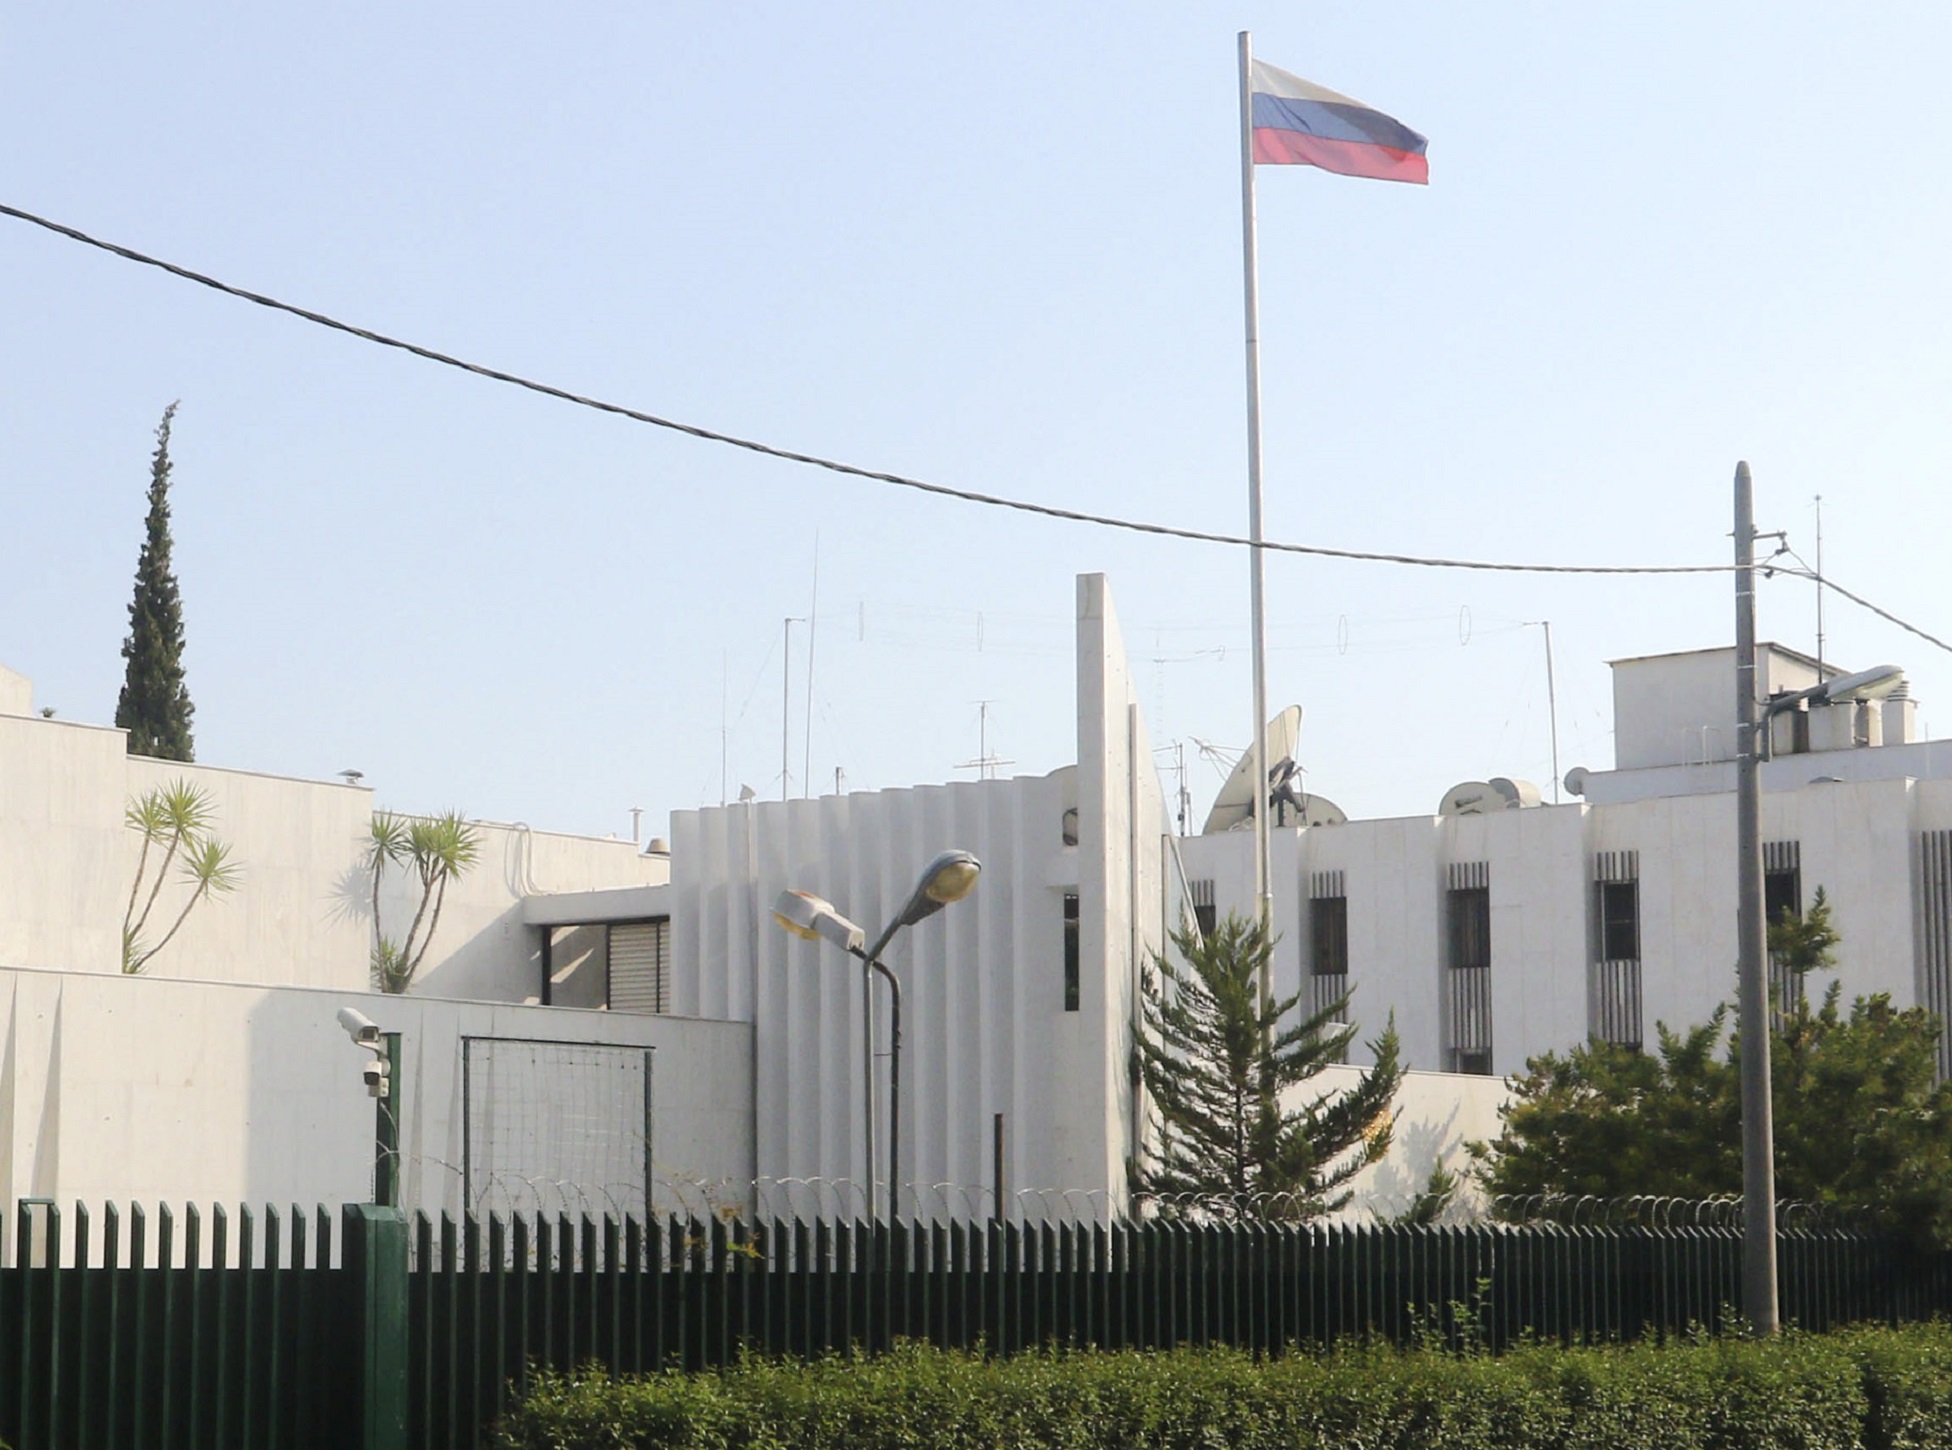 25η Μαρτίου: Το μήνυμα της ρωσικής πρεσβείας στην Ελλάδα